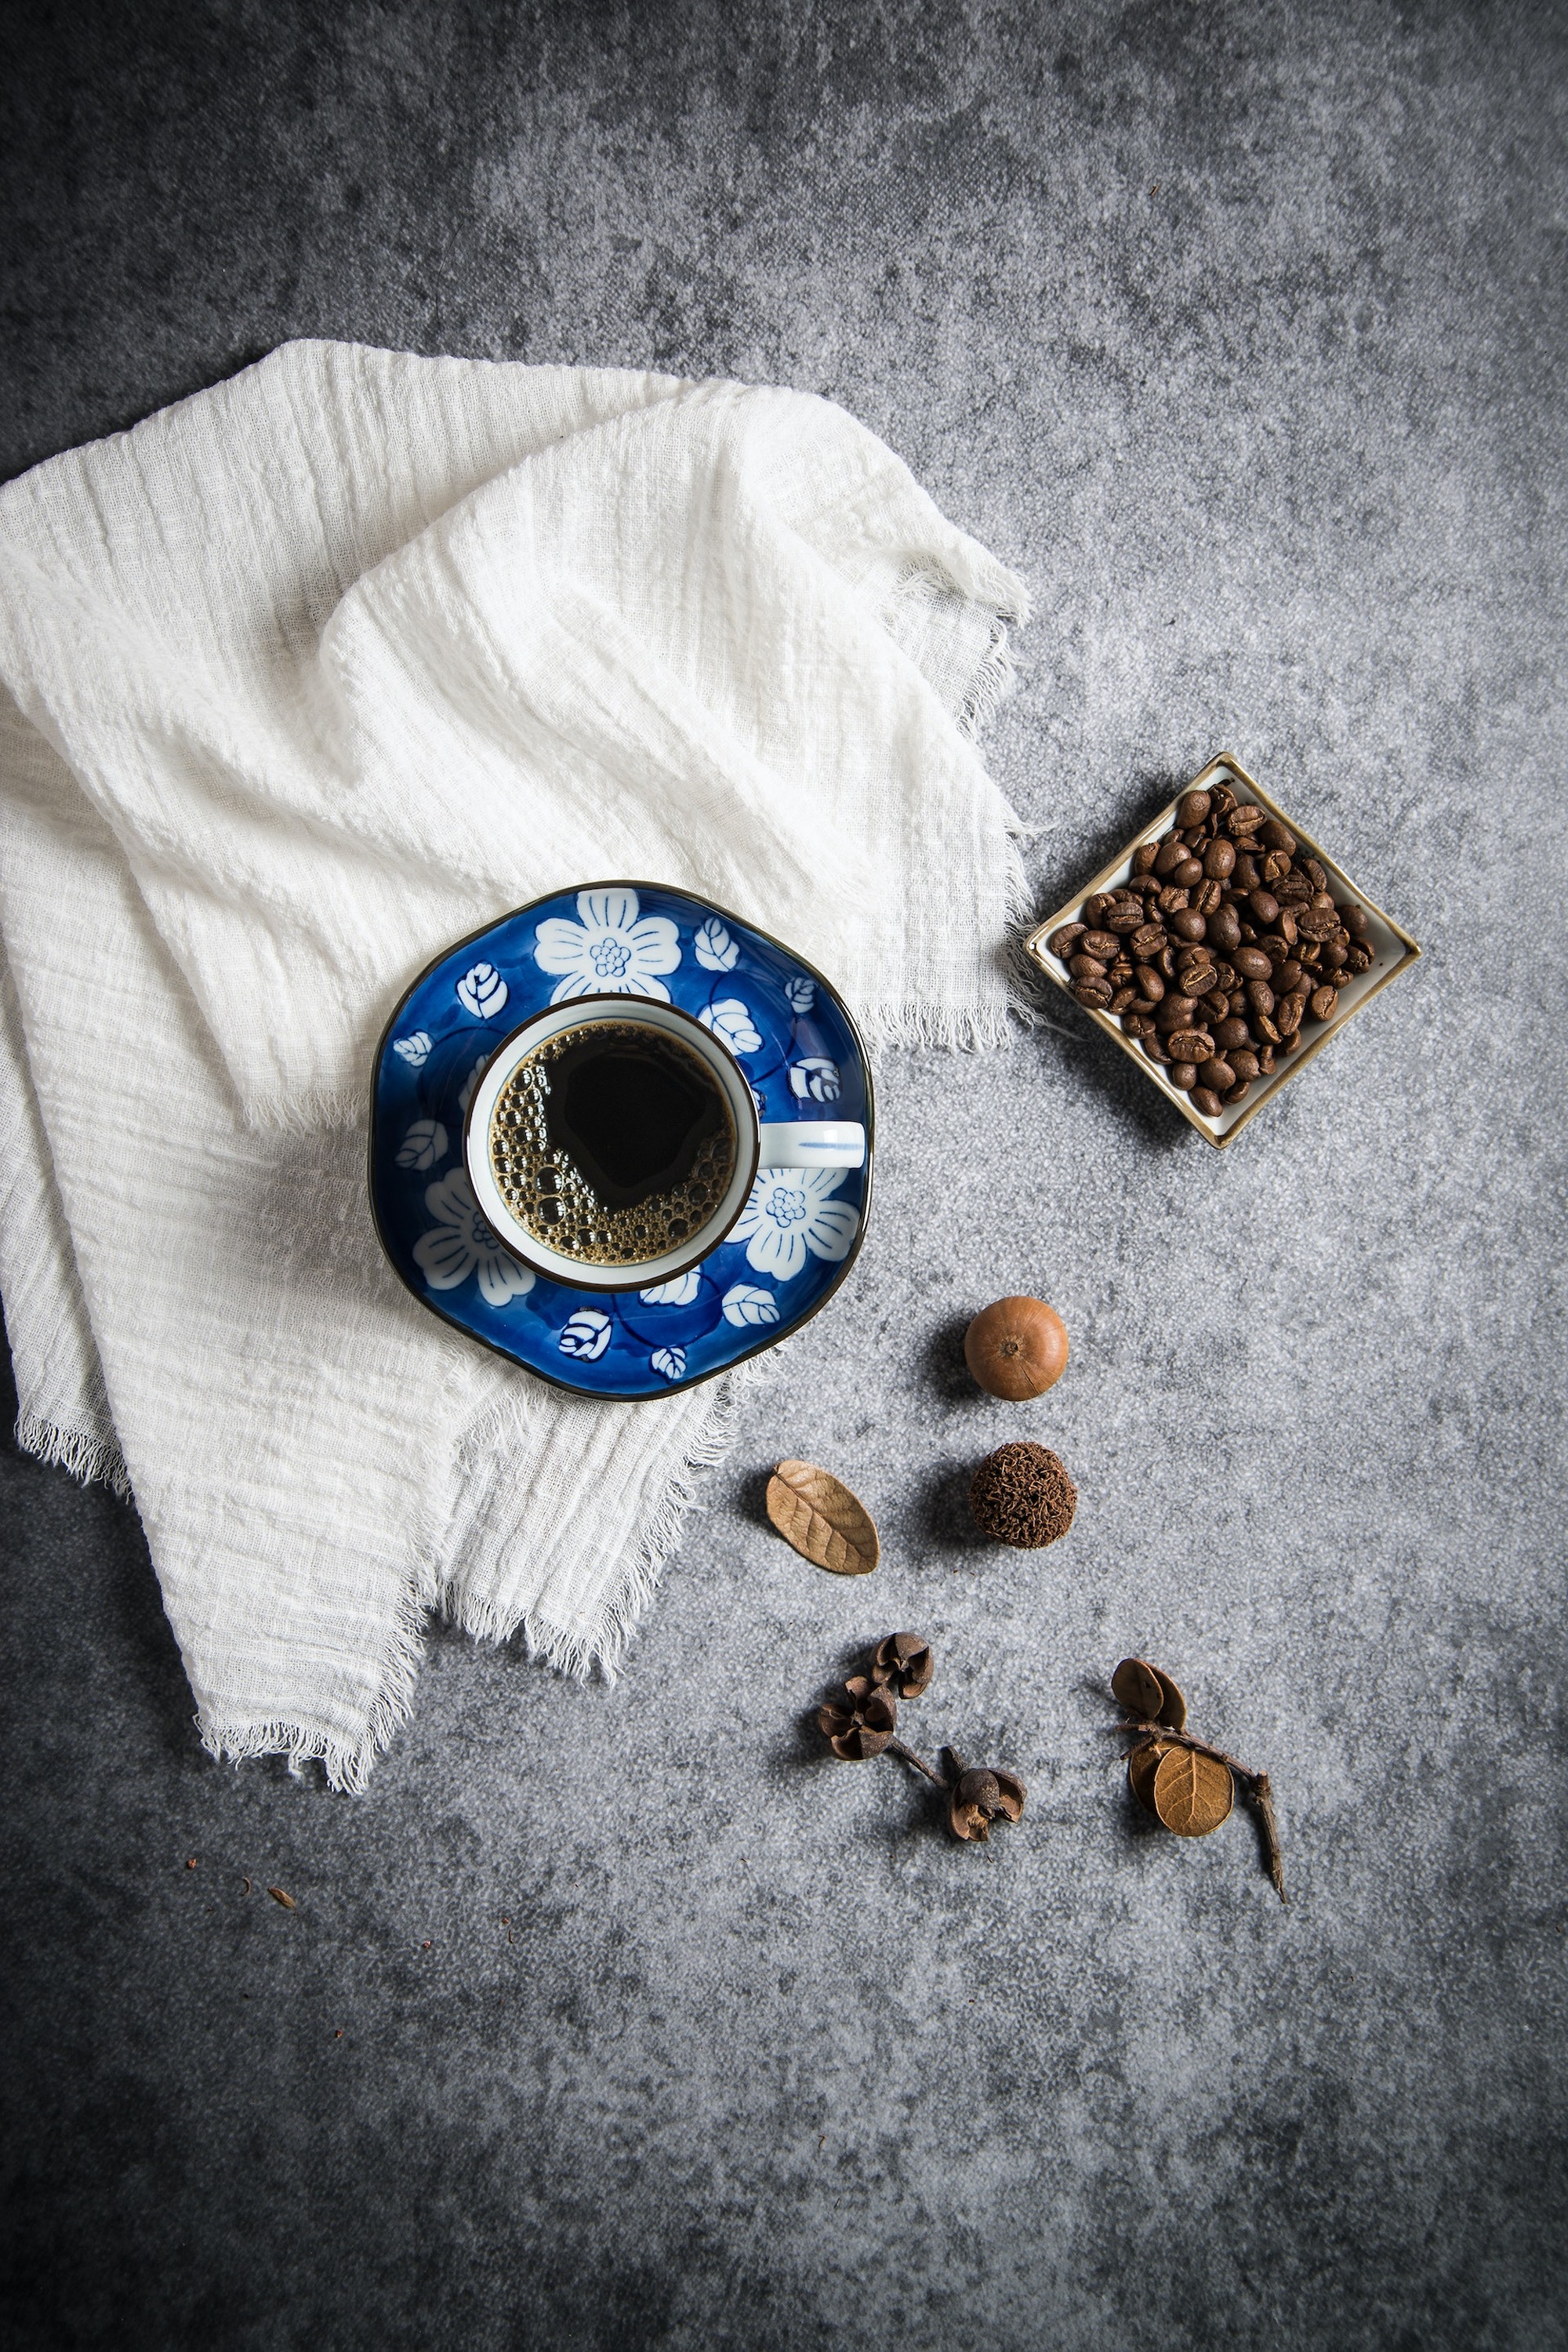 آیا قهوه جذب ویتامین و مواد معدنی رو مختل می کنه؟